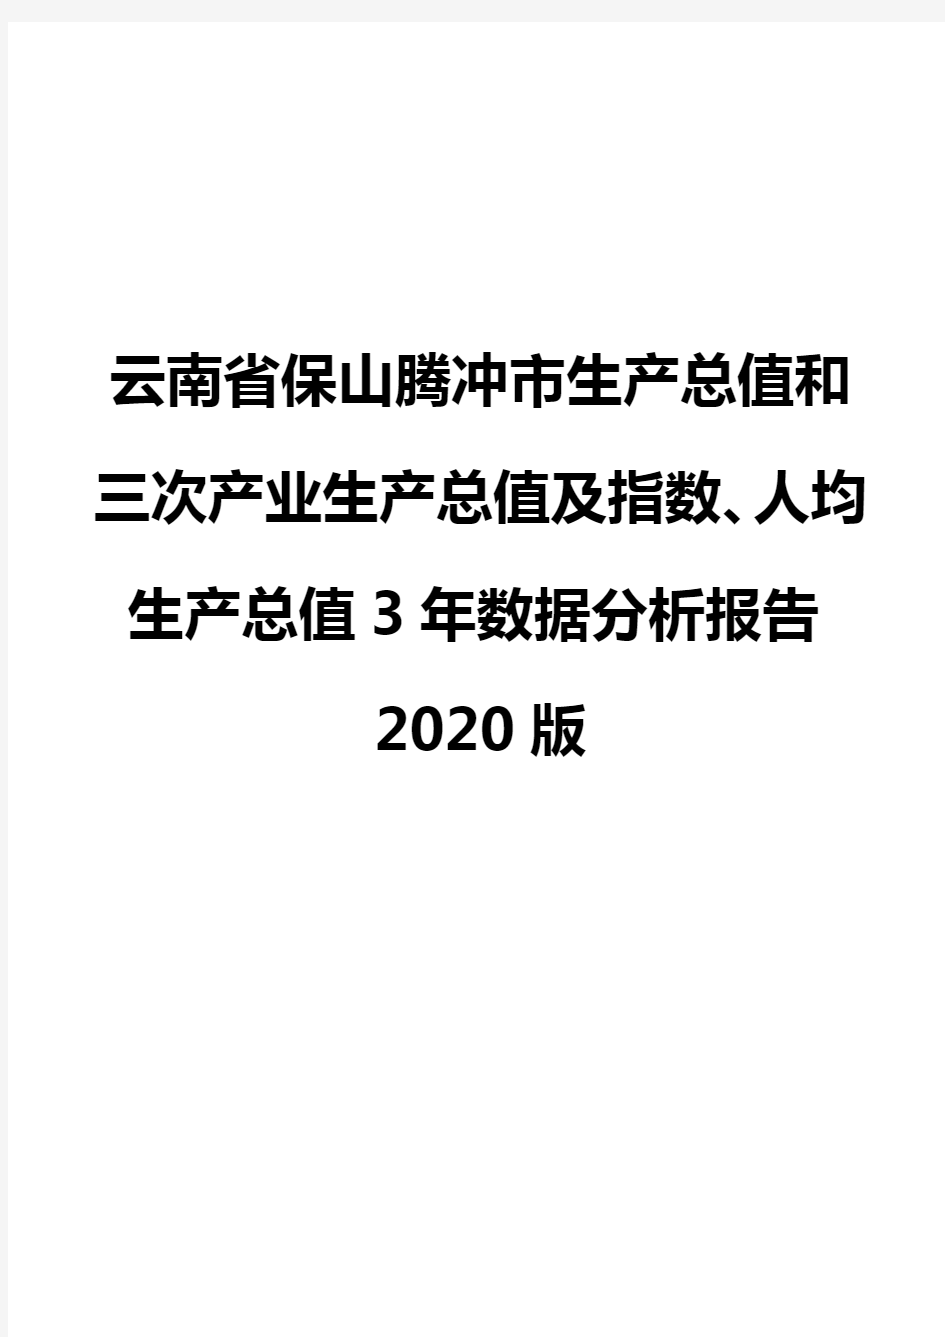 云南省保山腾冲市生产总值和三次产业生产总值及指数、人均生产总值3年数据分析报告2020版